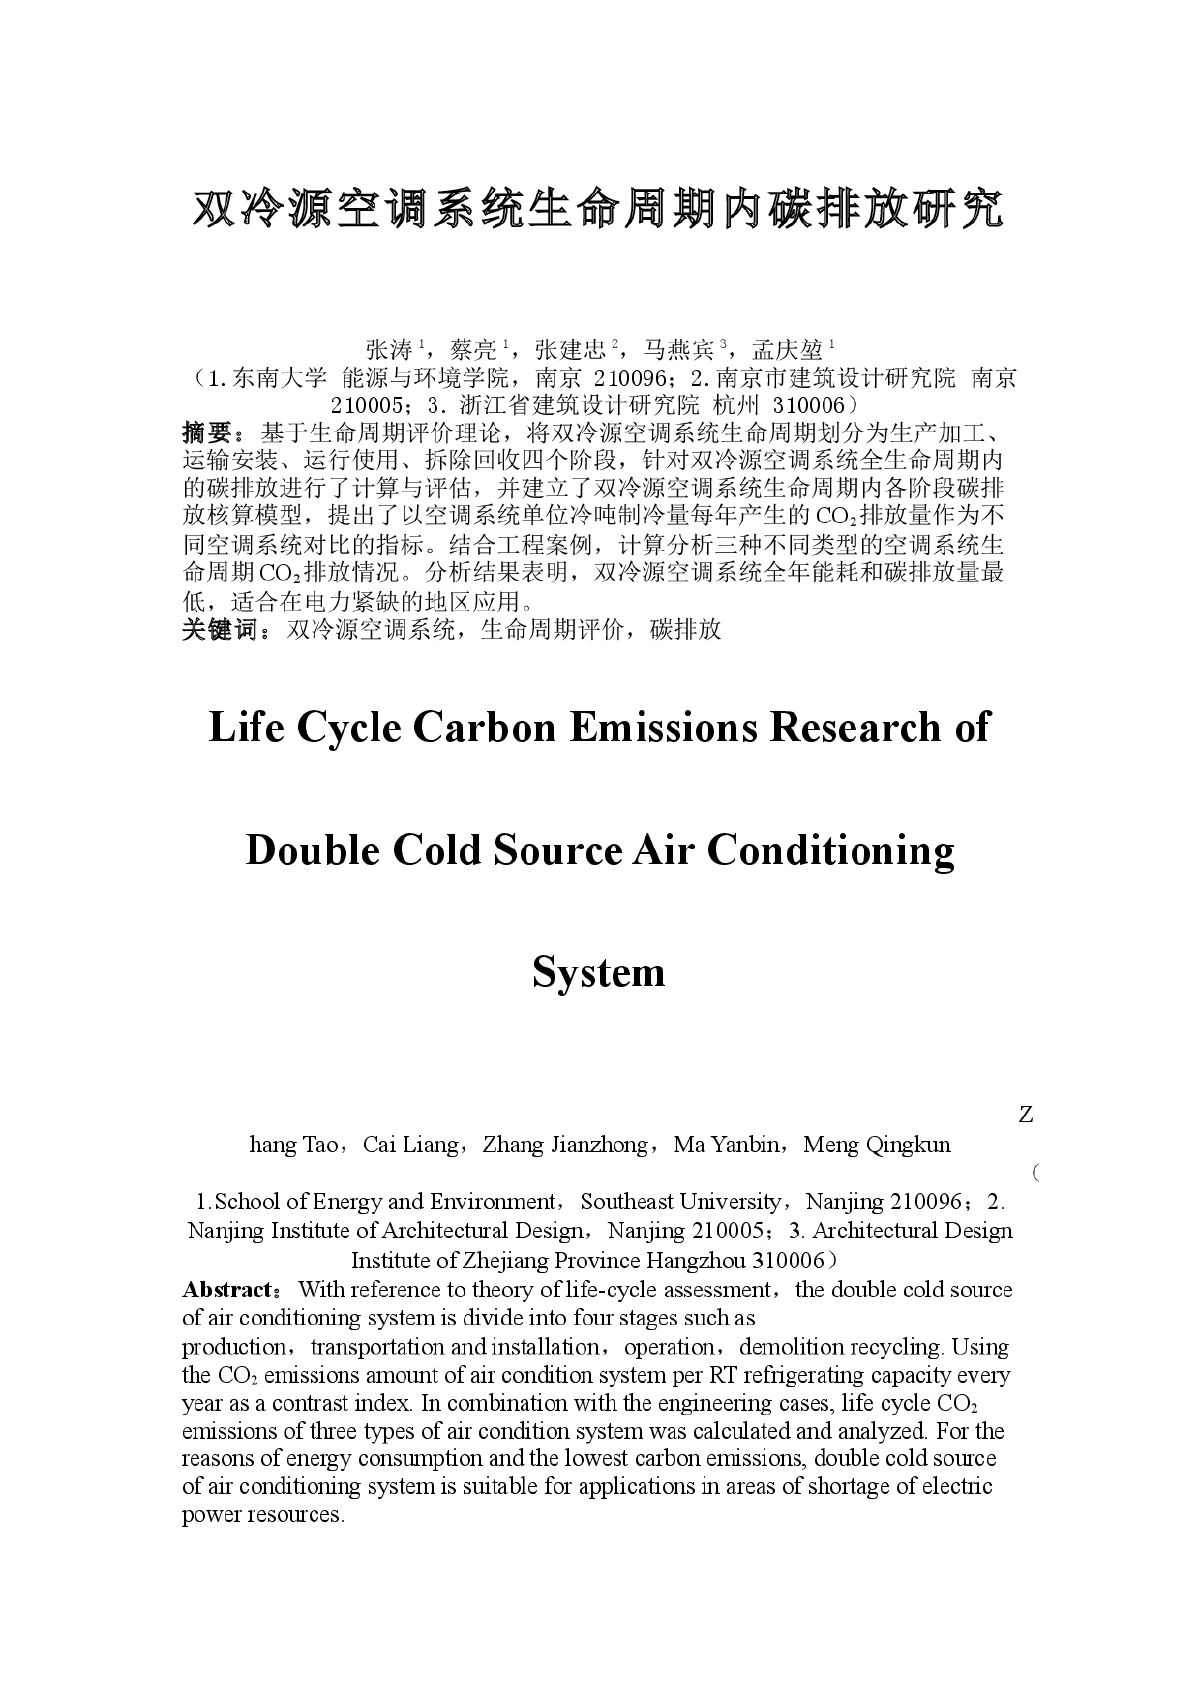 双冷源空调系统生命周期内碳排放研究最终修改版（稿件标号：4395）-图一